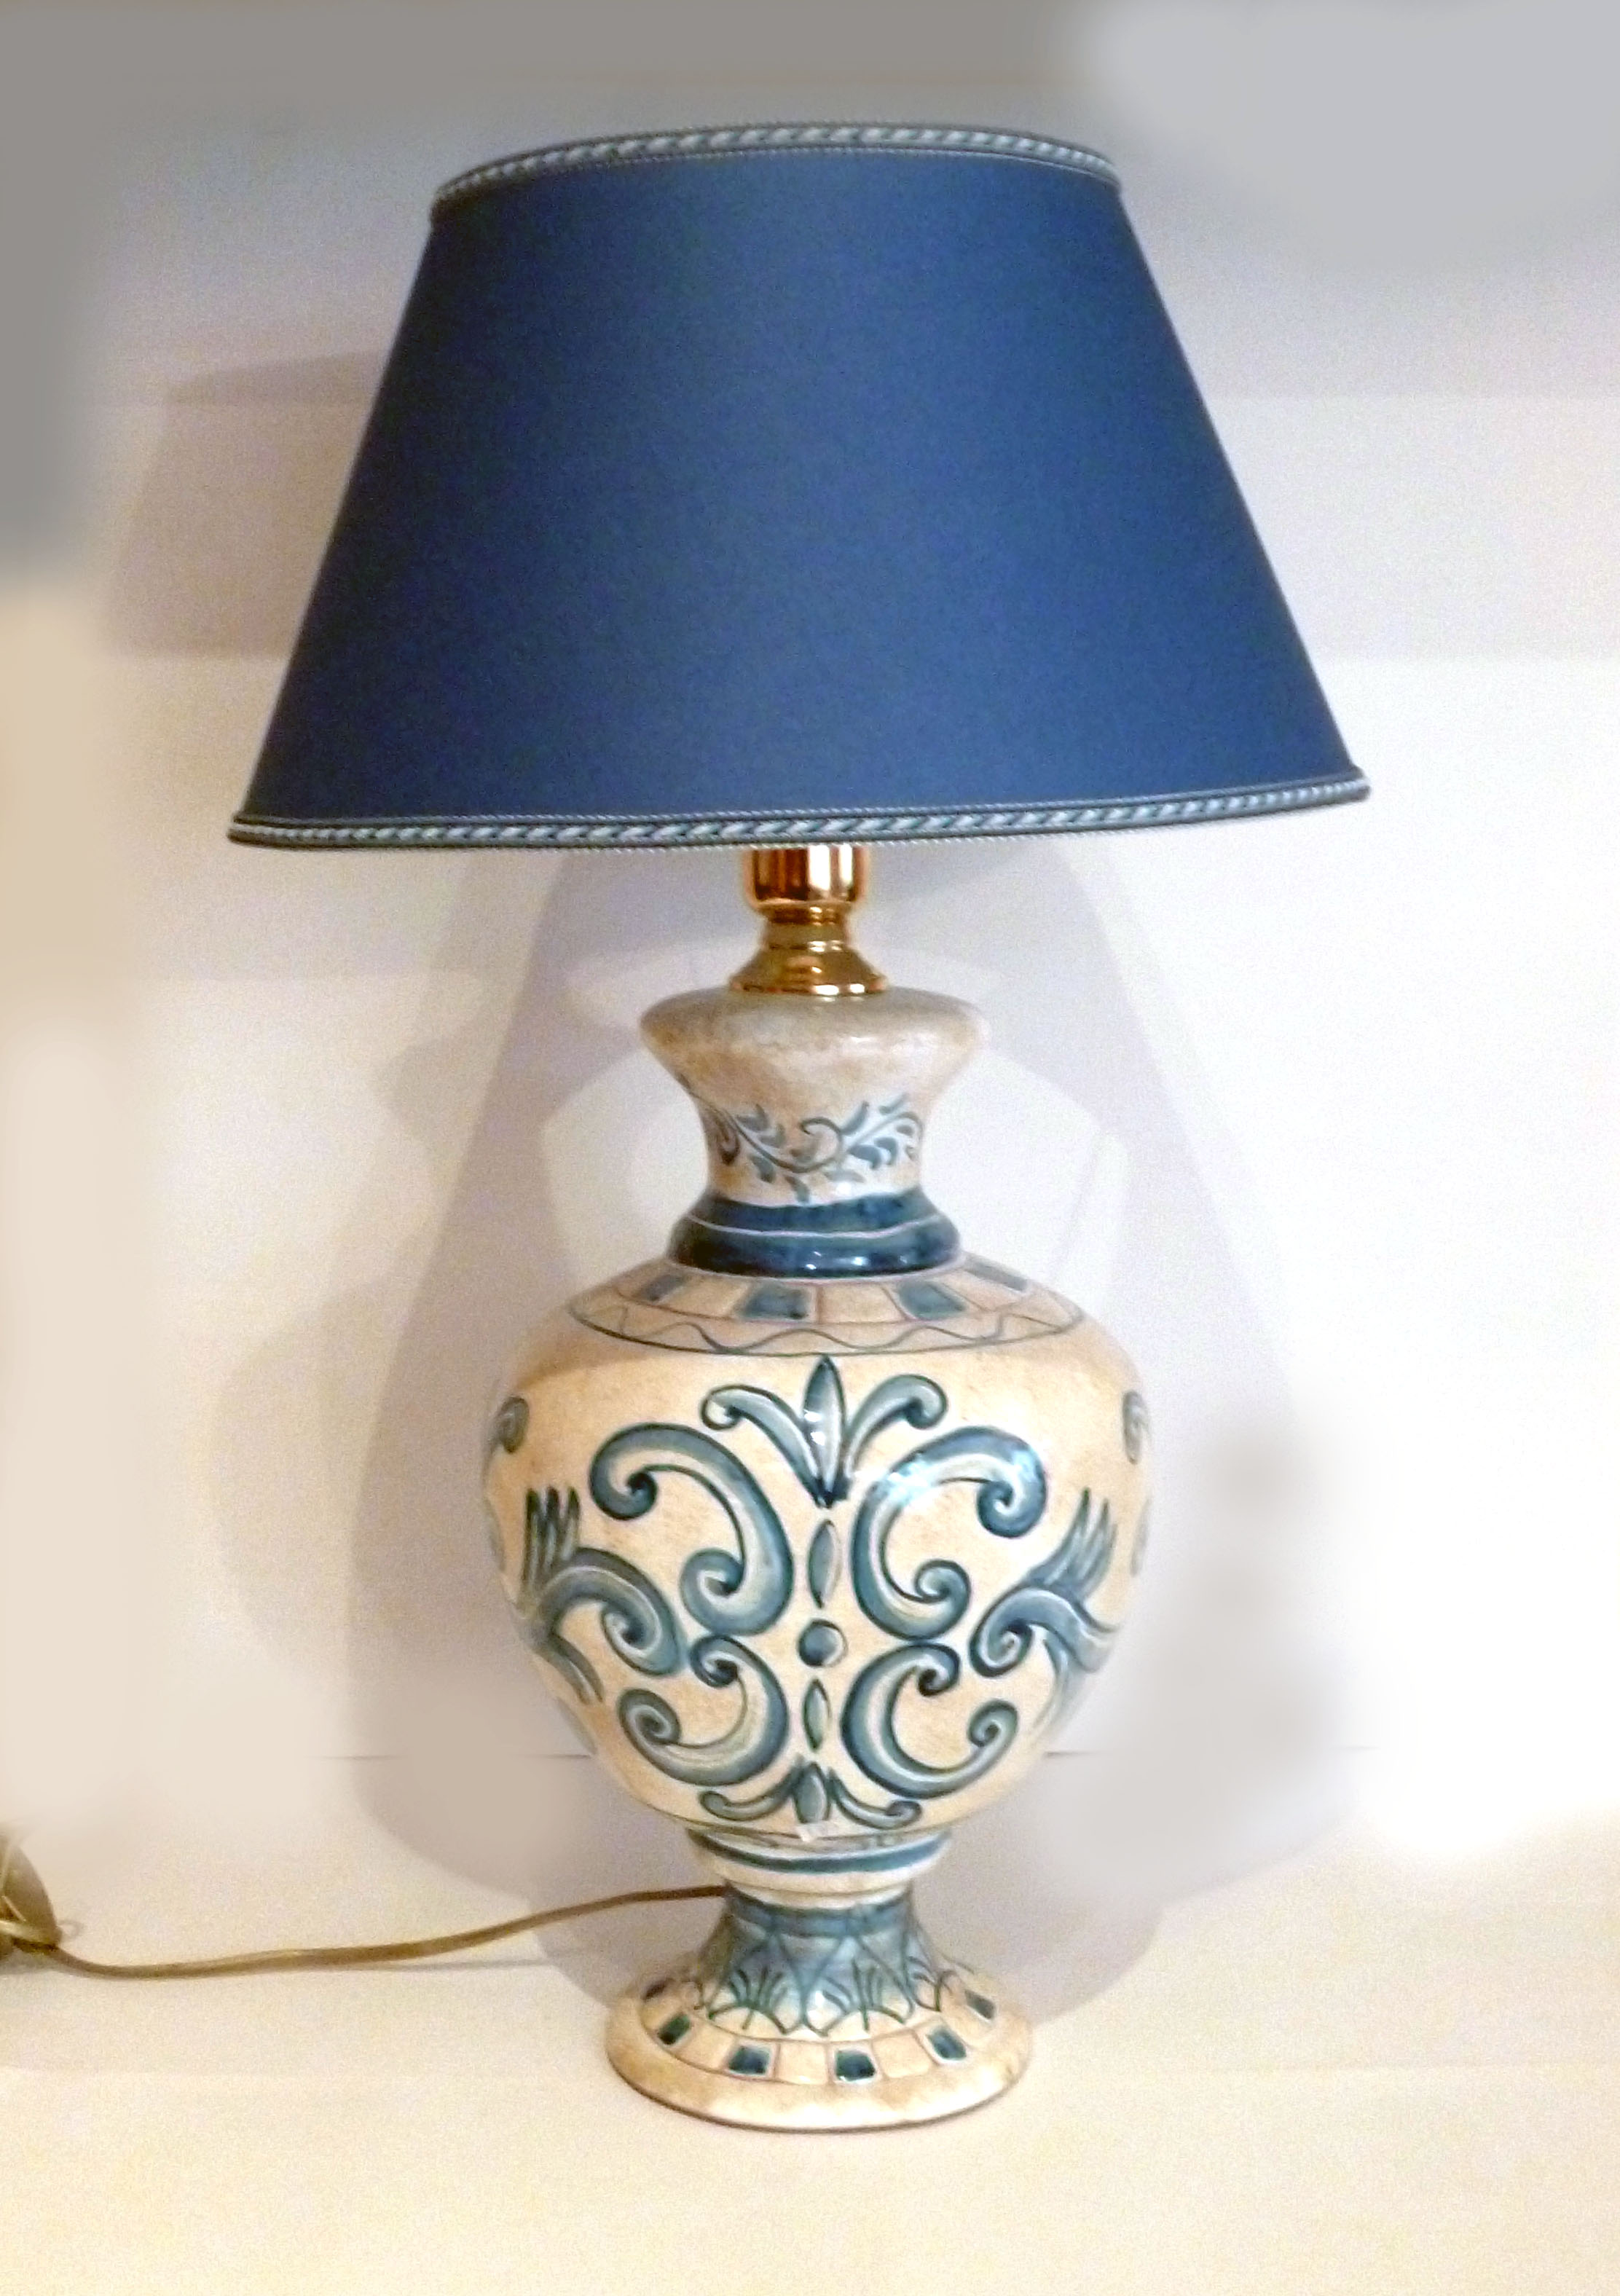 Lume grande, in stile Impero, con decori colori azzurri